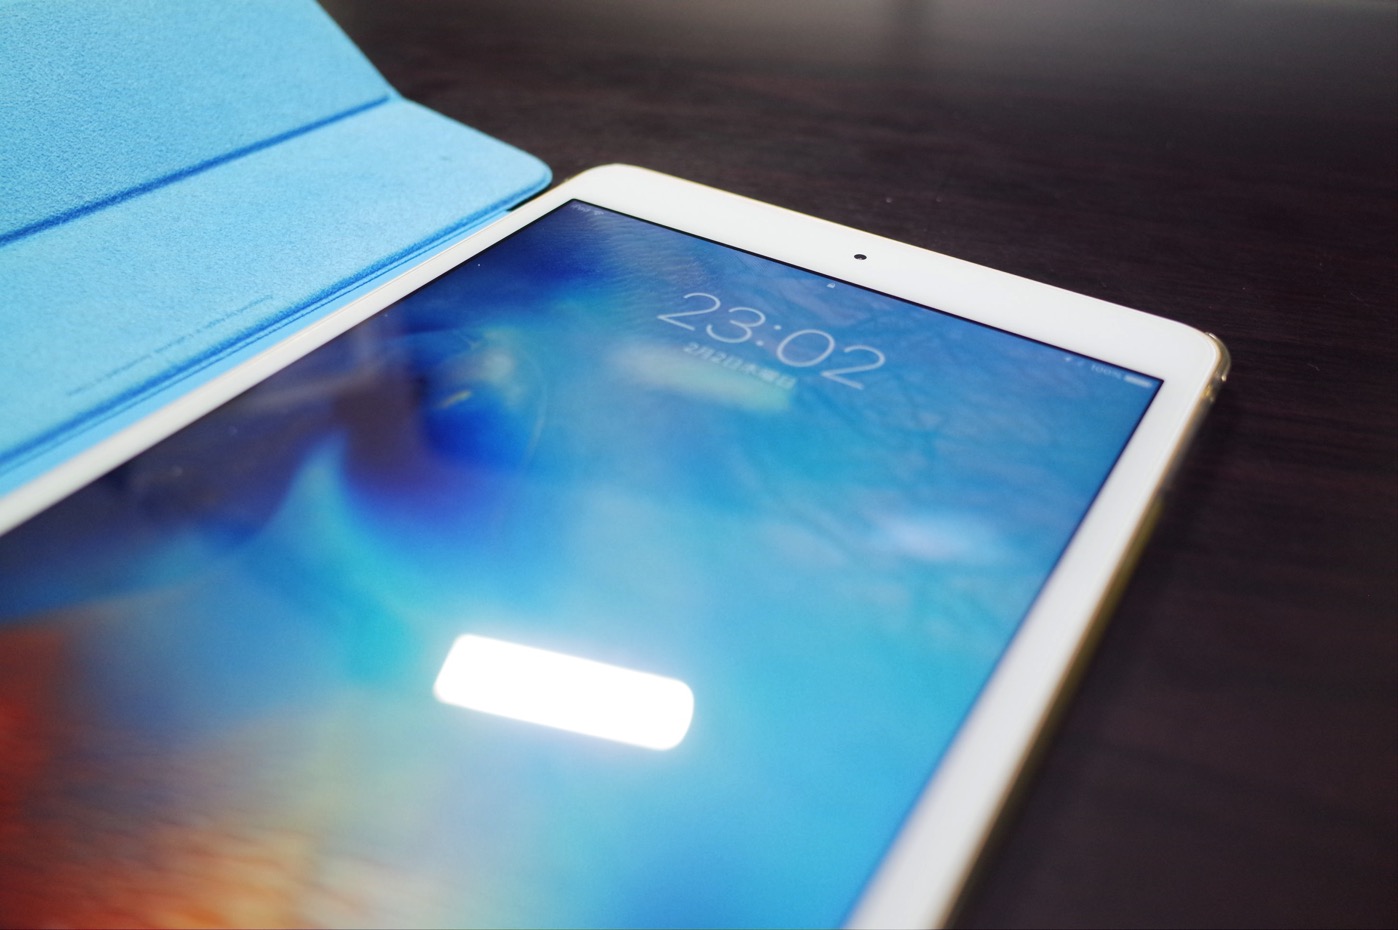 [iPad]愛機iPad mini 4に保護ガラス「RoiCeil 液晶保護強化ガラスフィルム 硬度9H 超薄0.3mm 2.5D ラウンドエッジ加工」を貼ってみたよ